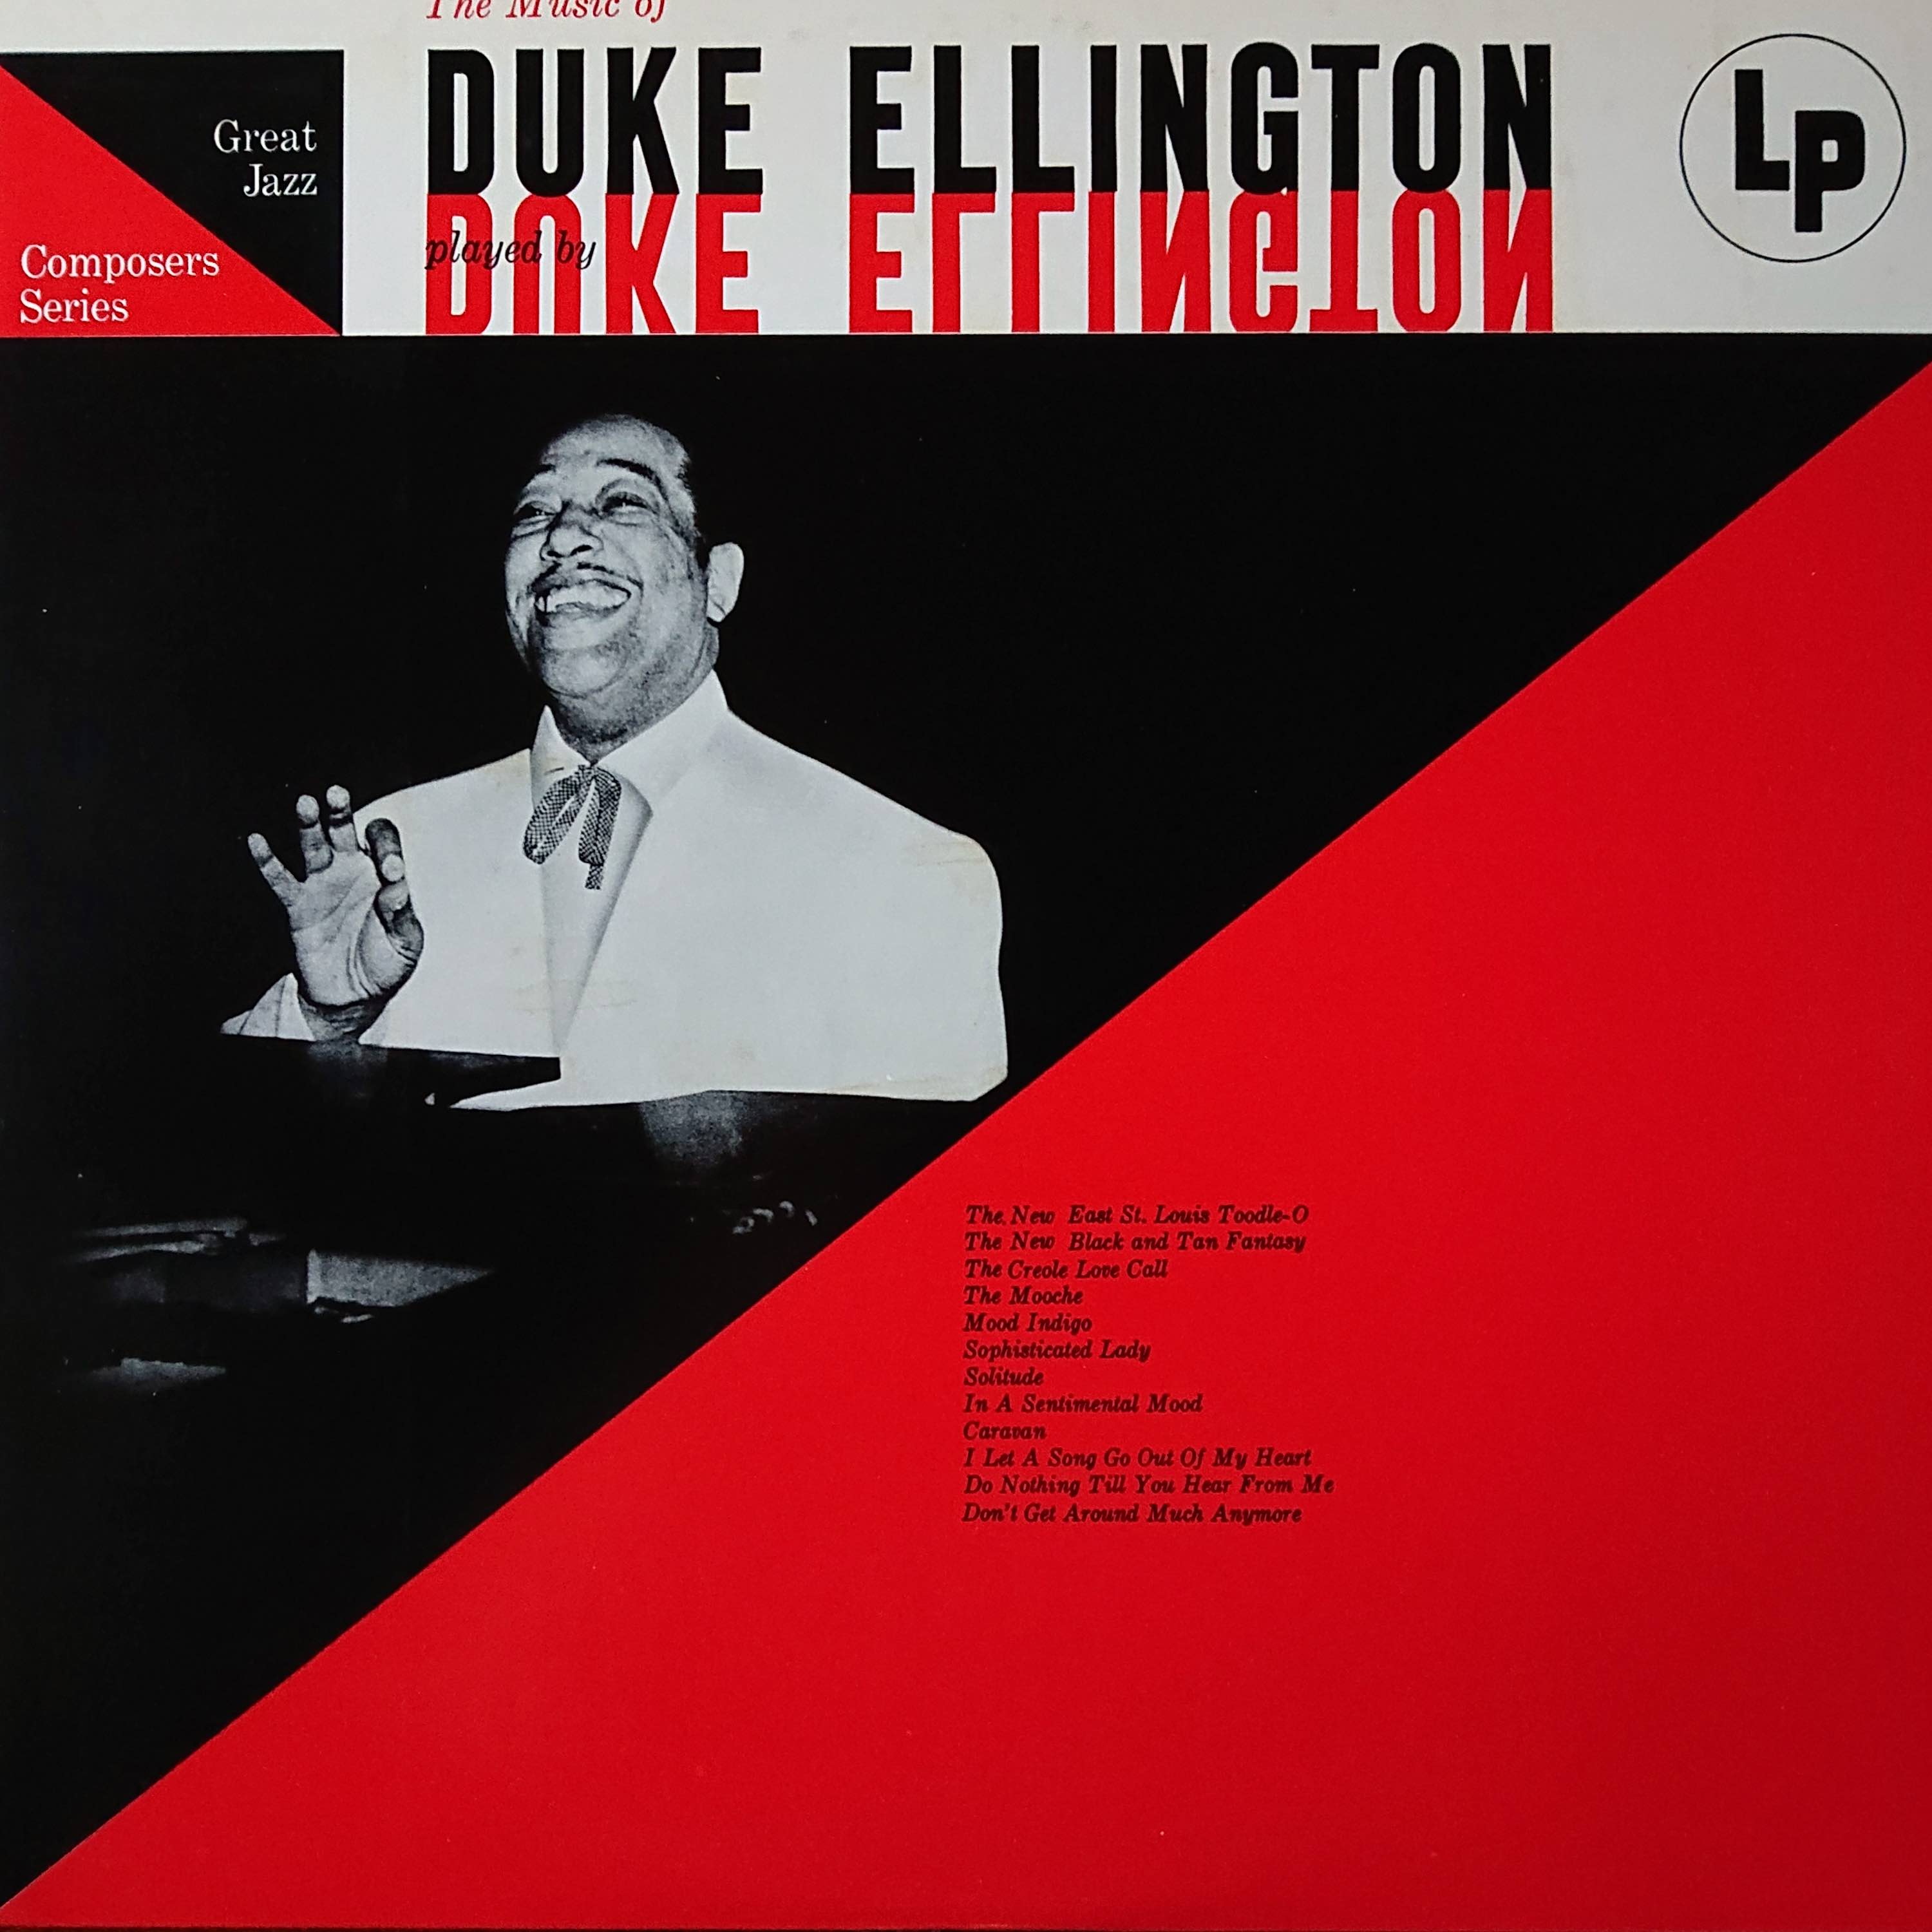 ジャンゴとマーフィーのjazzblog ラブラドールが聴いた今日のジャズ 第16回 The Music Of Duke Ellington Cbs Sony ap 1847